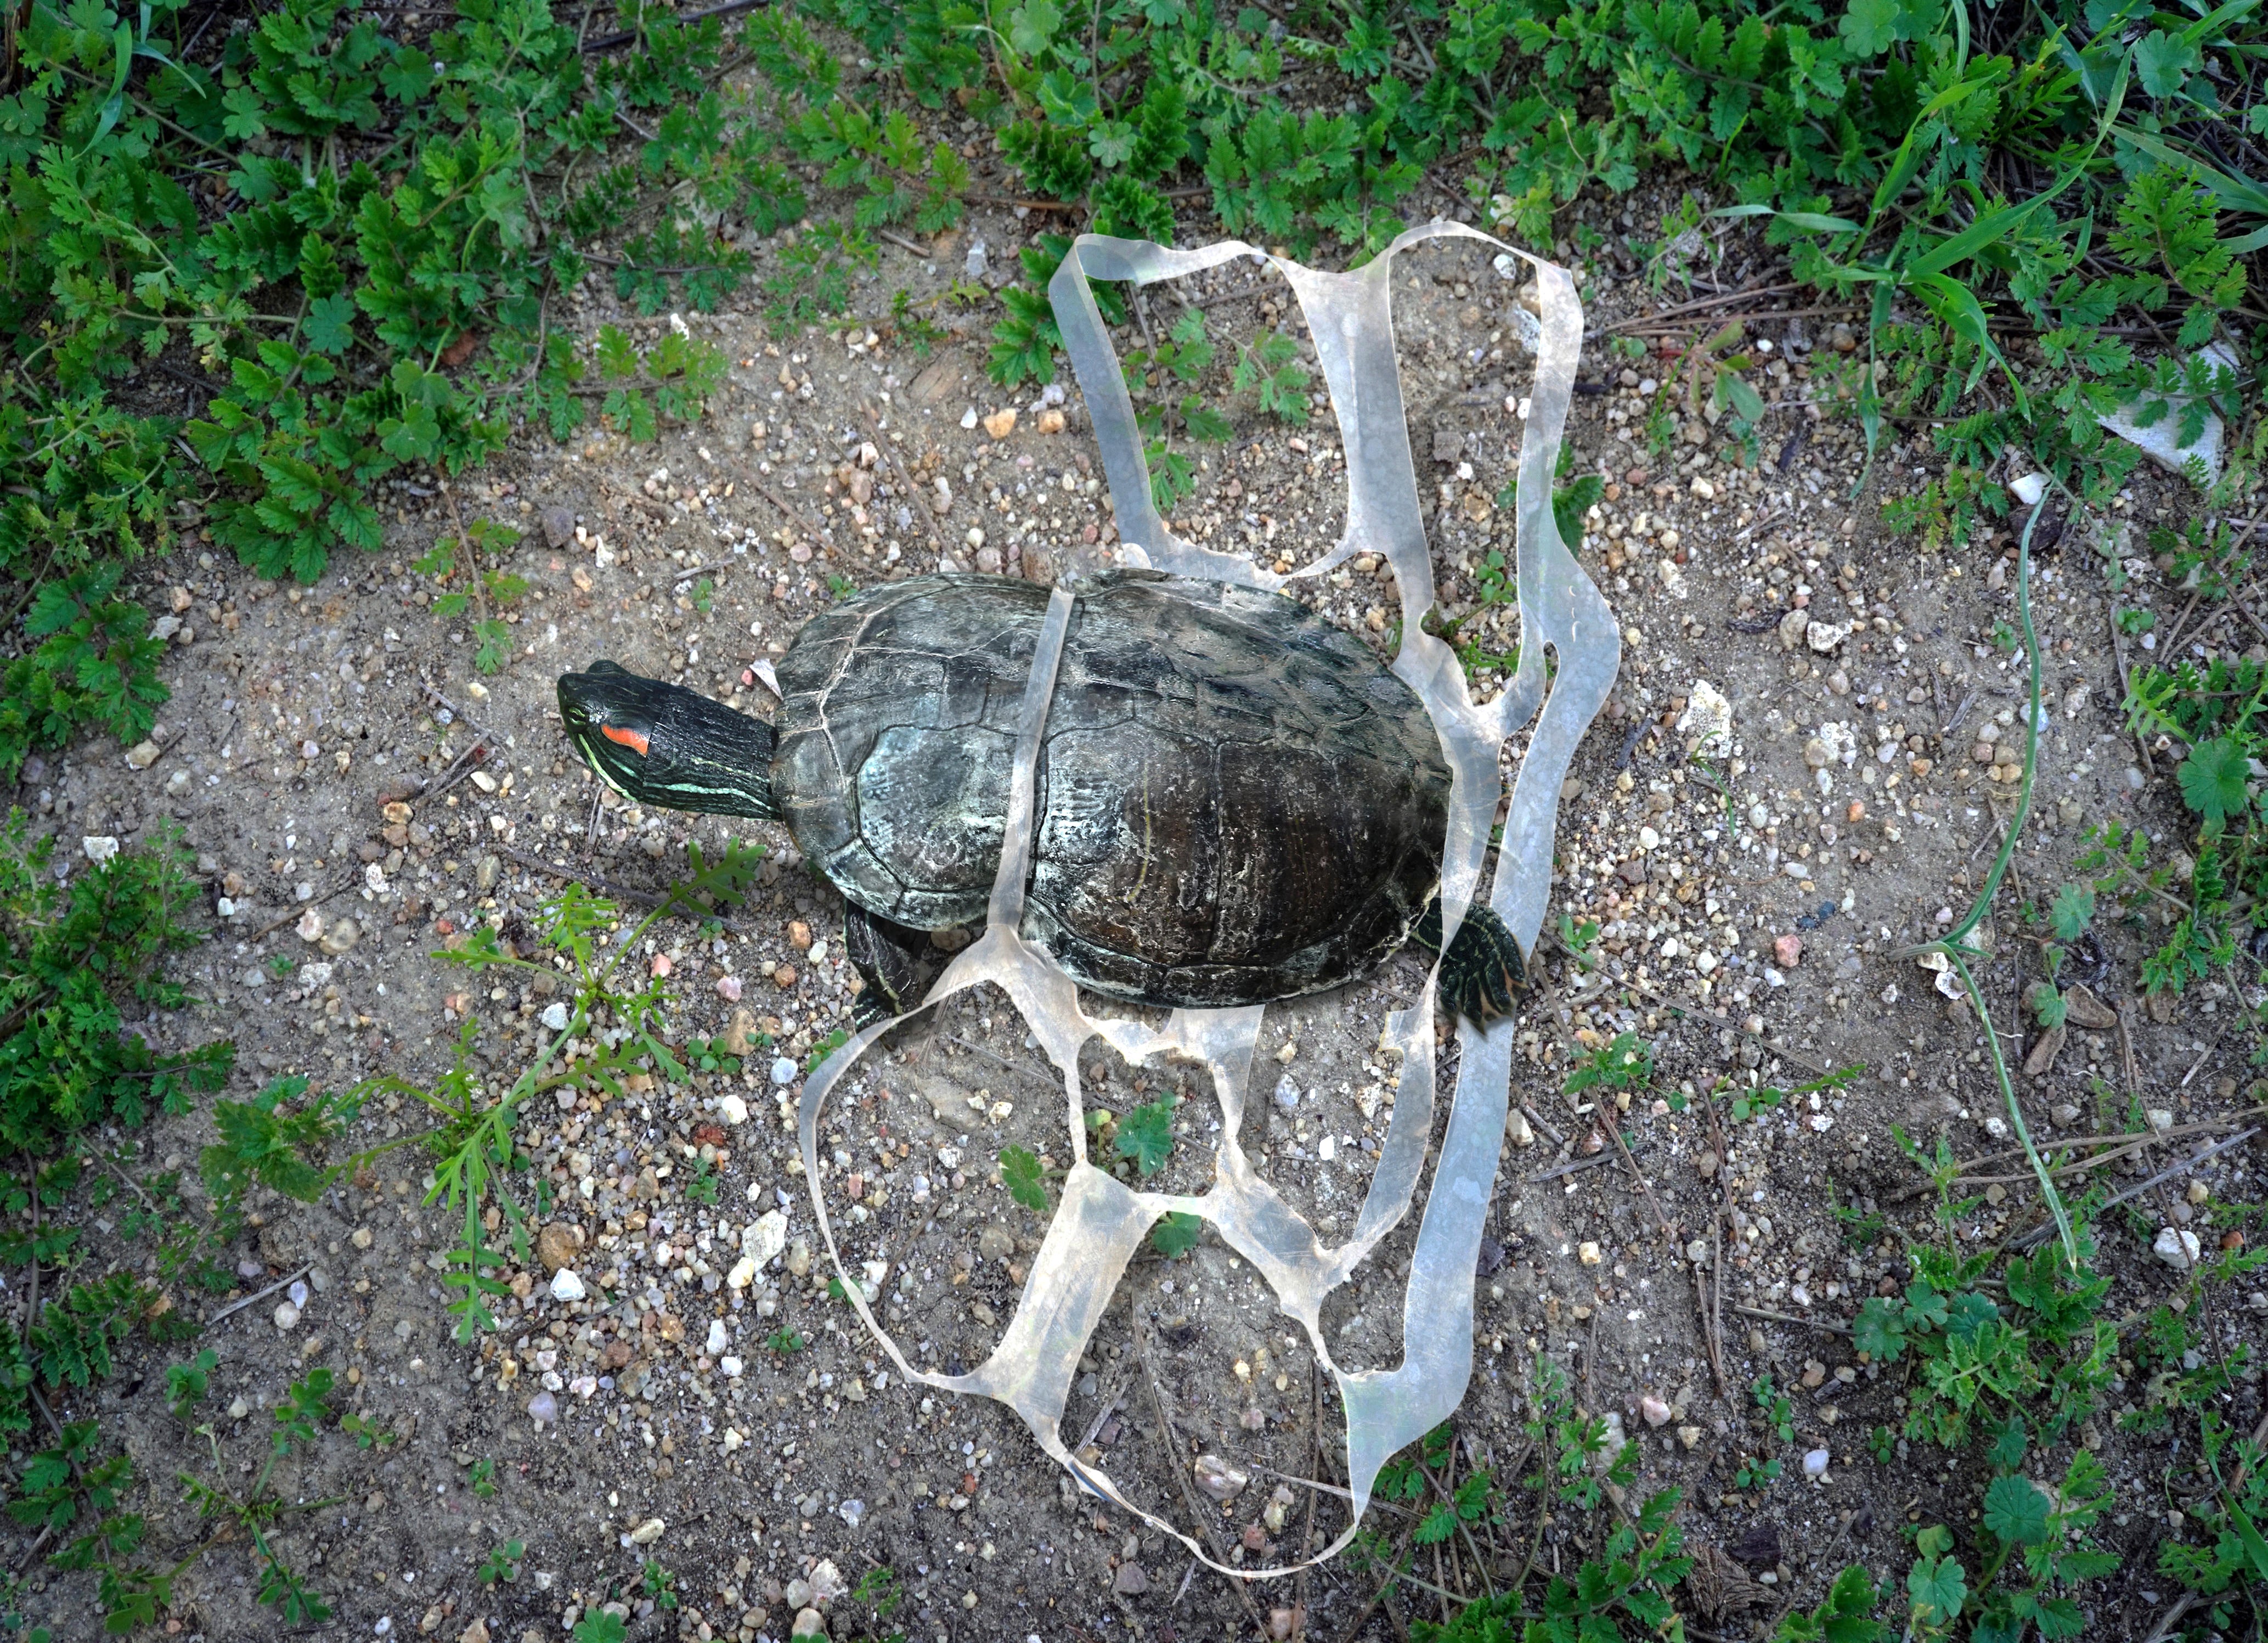 WWF Rings Alarm Bells on Albania's Plastic Pollution • IIA